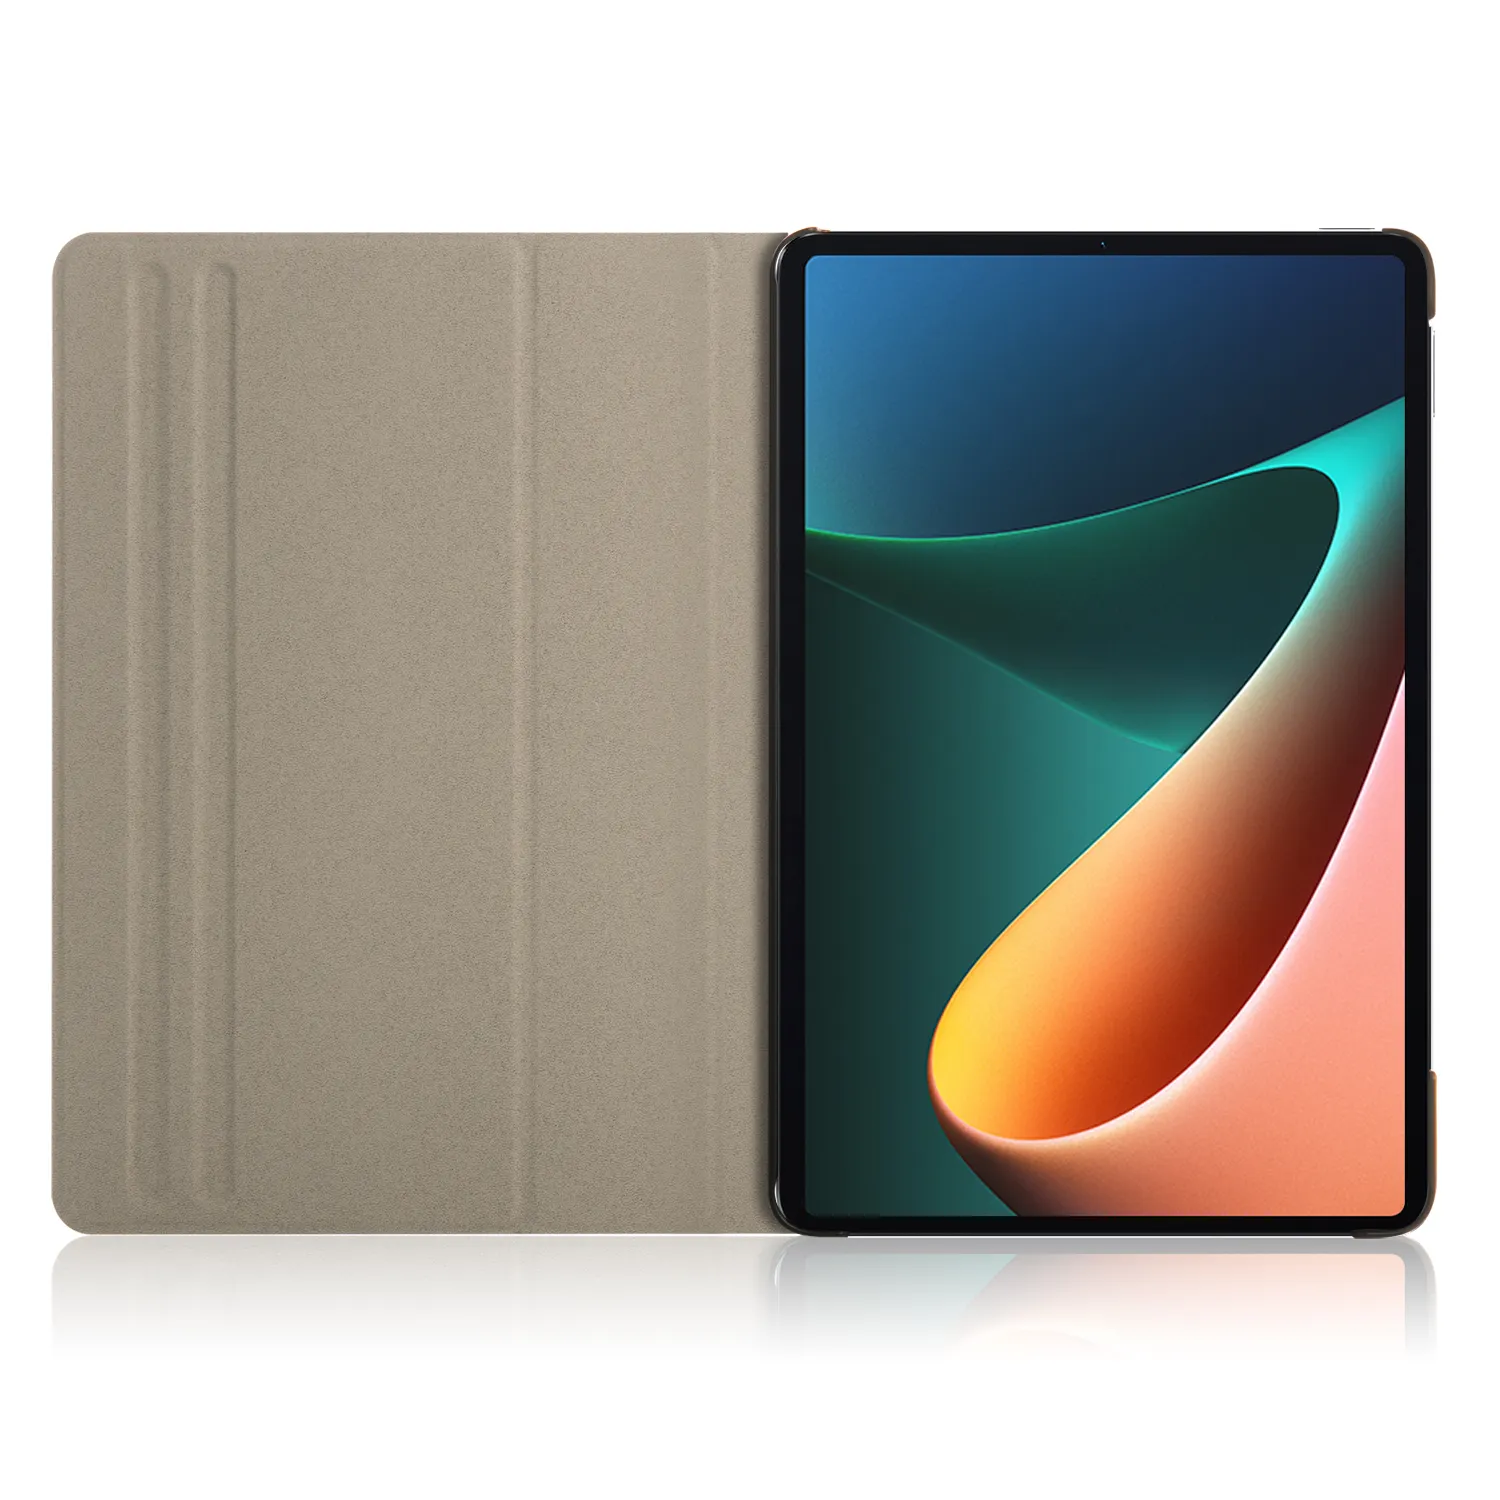 그물 케이스 도매 고품질 PU 가죽 전압 회전 태블릿 쉘 Xiaomi MI pad 5/ MI pad 5 pro 11 인치